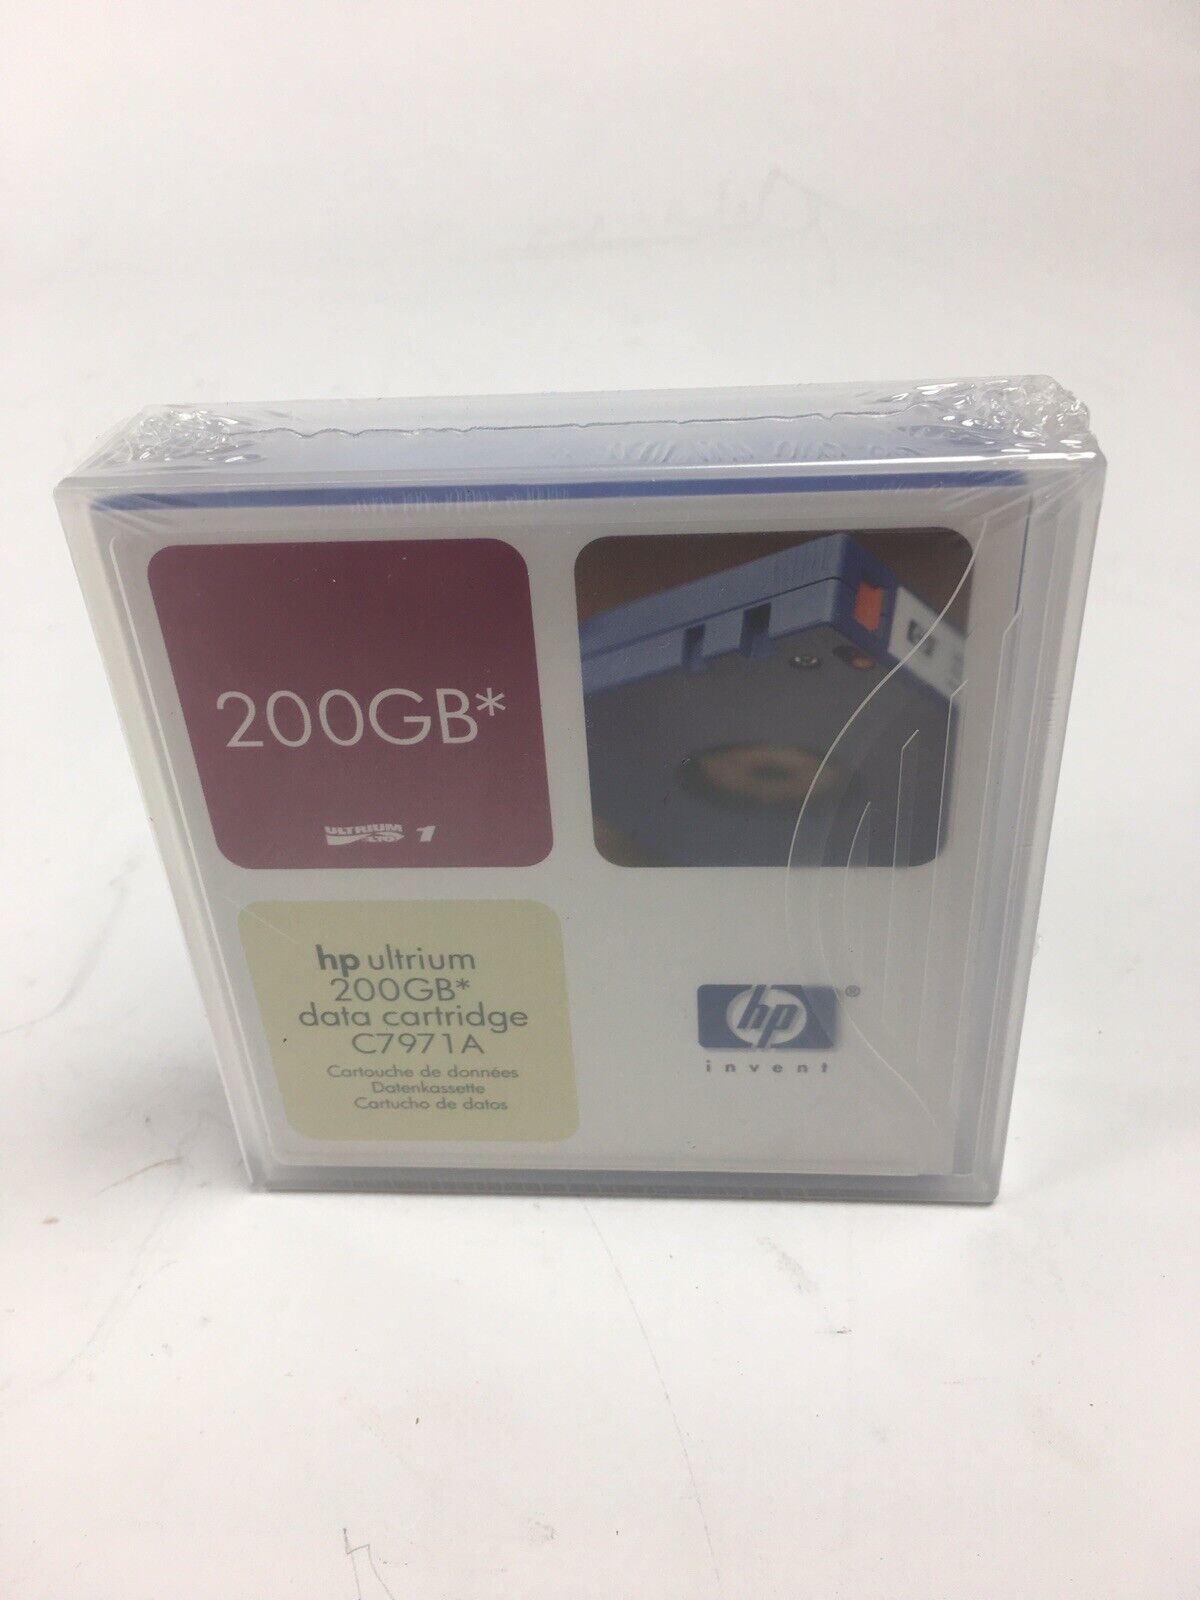 HP LTO-1 Ultrium 200GB Data Cartridge C7971A, 5 pack